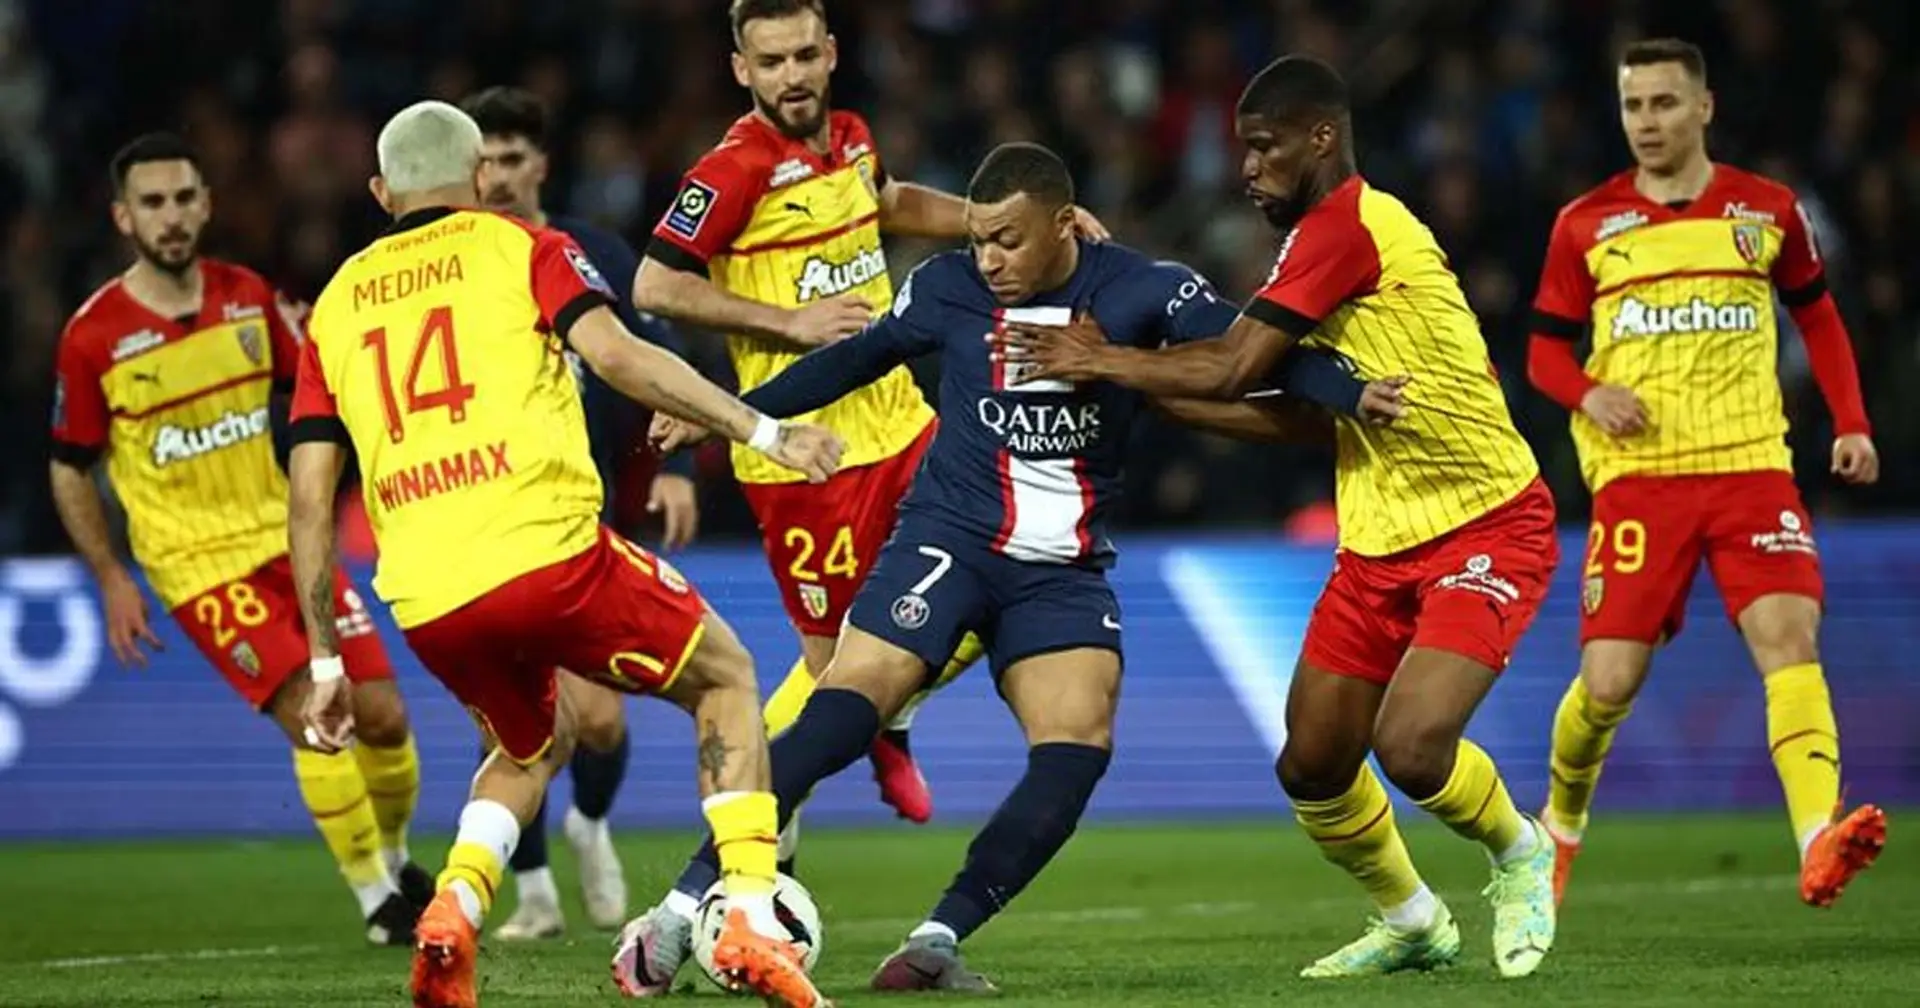 Le PSG tout près de décrocher son 11e titre en Ligue 1, Lens a encore une possibilité d'être champion